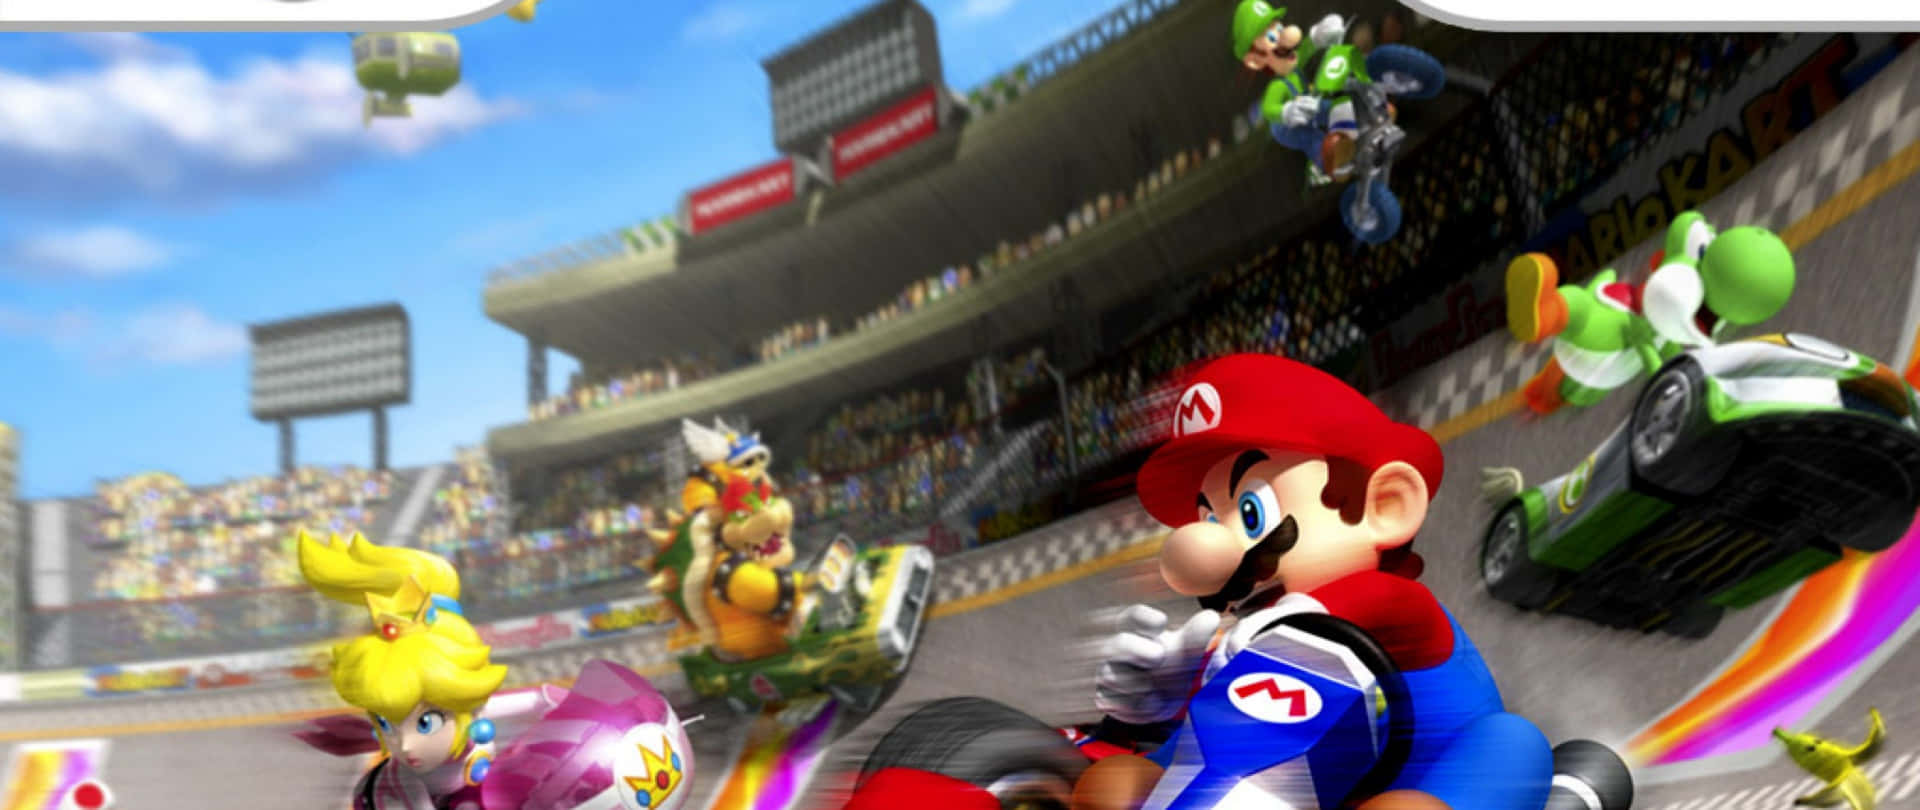 ¡diversióny Velocidad! ¡únete A La Carrera Con Mario Kart!